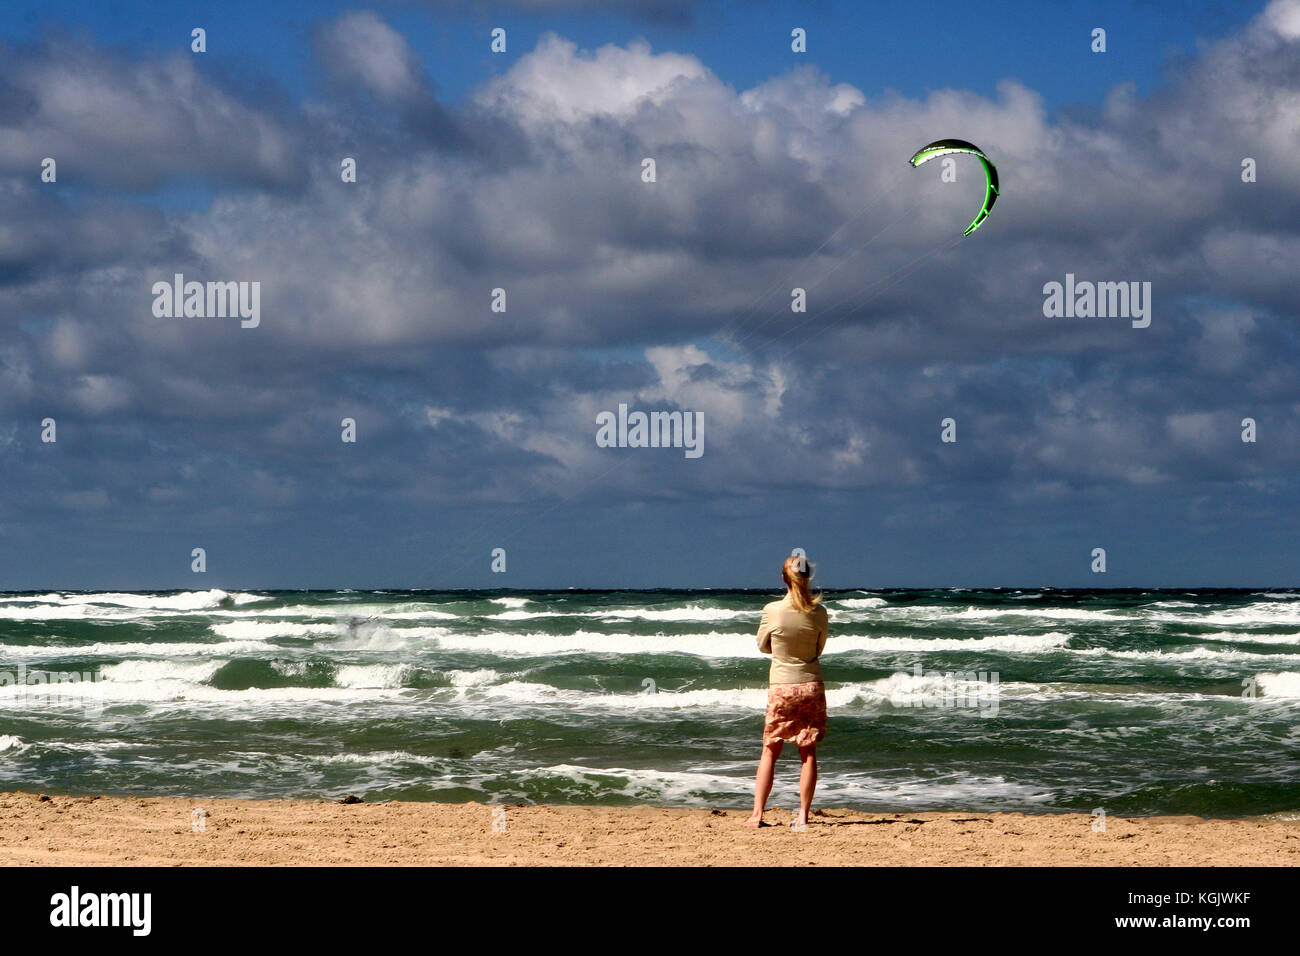 summer in denmark:beach of loekken, girl at the beach Stock Photo